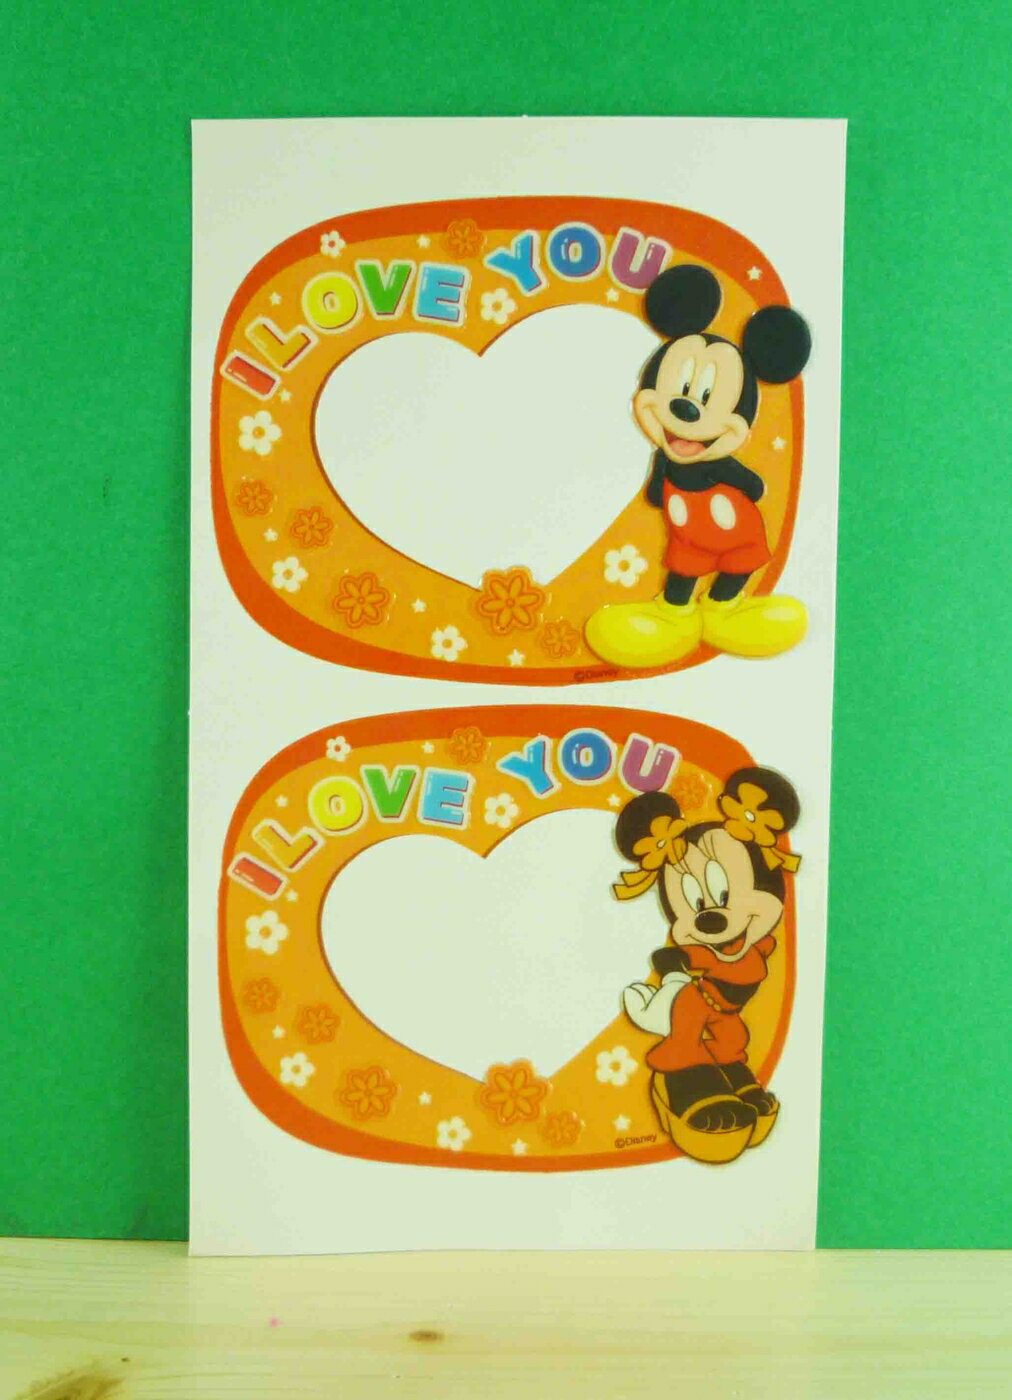 【震撼精品百貨】Micky Mouse 米奇/米妮 相框貼-愛心橘 震撼日式精品百貨